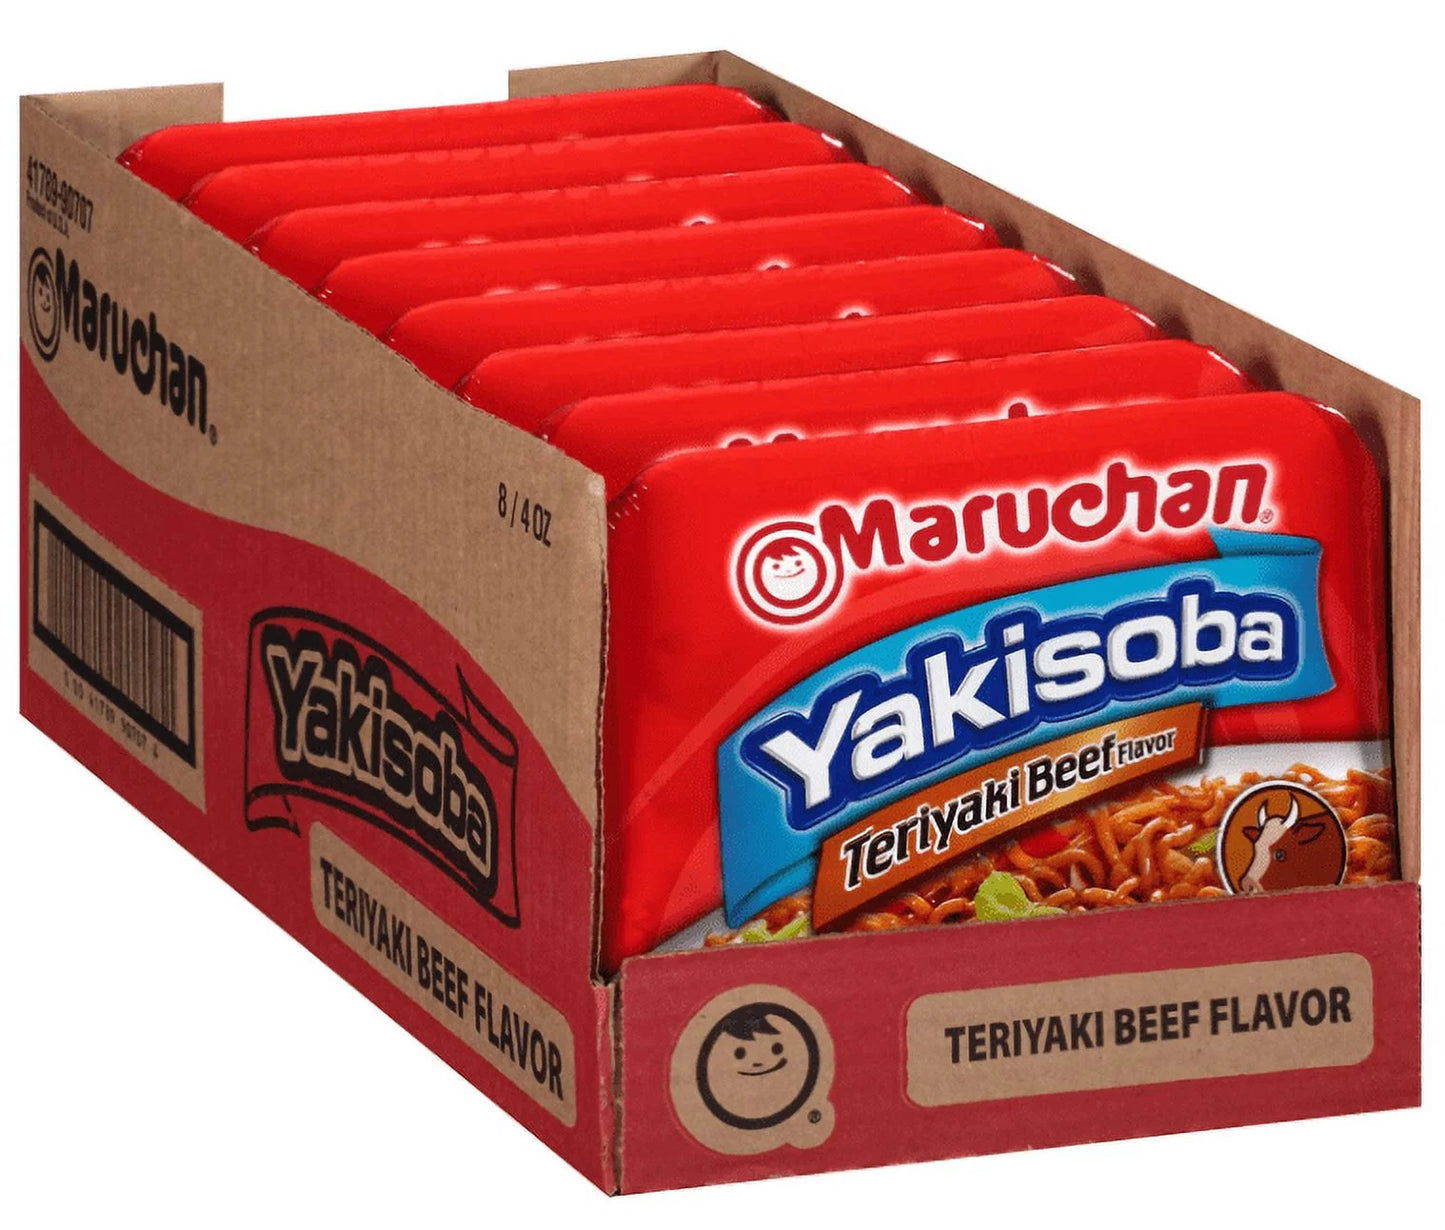 Maruchan Yakisoba Teriyaki Beef Flavor 4oz (Pack of 8)